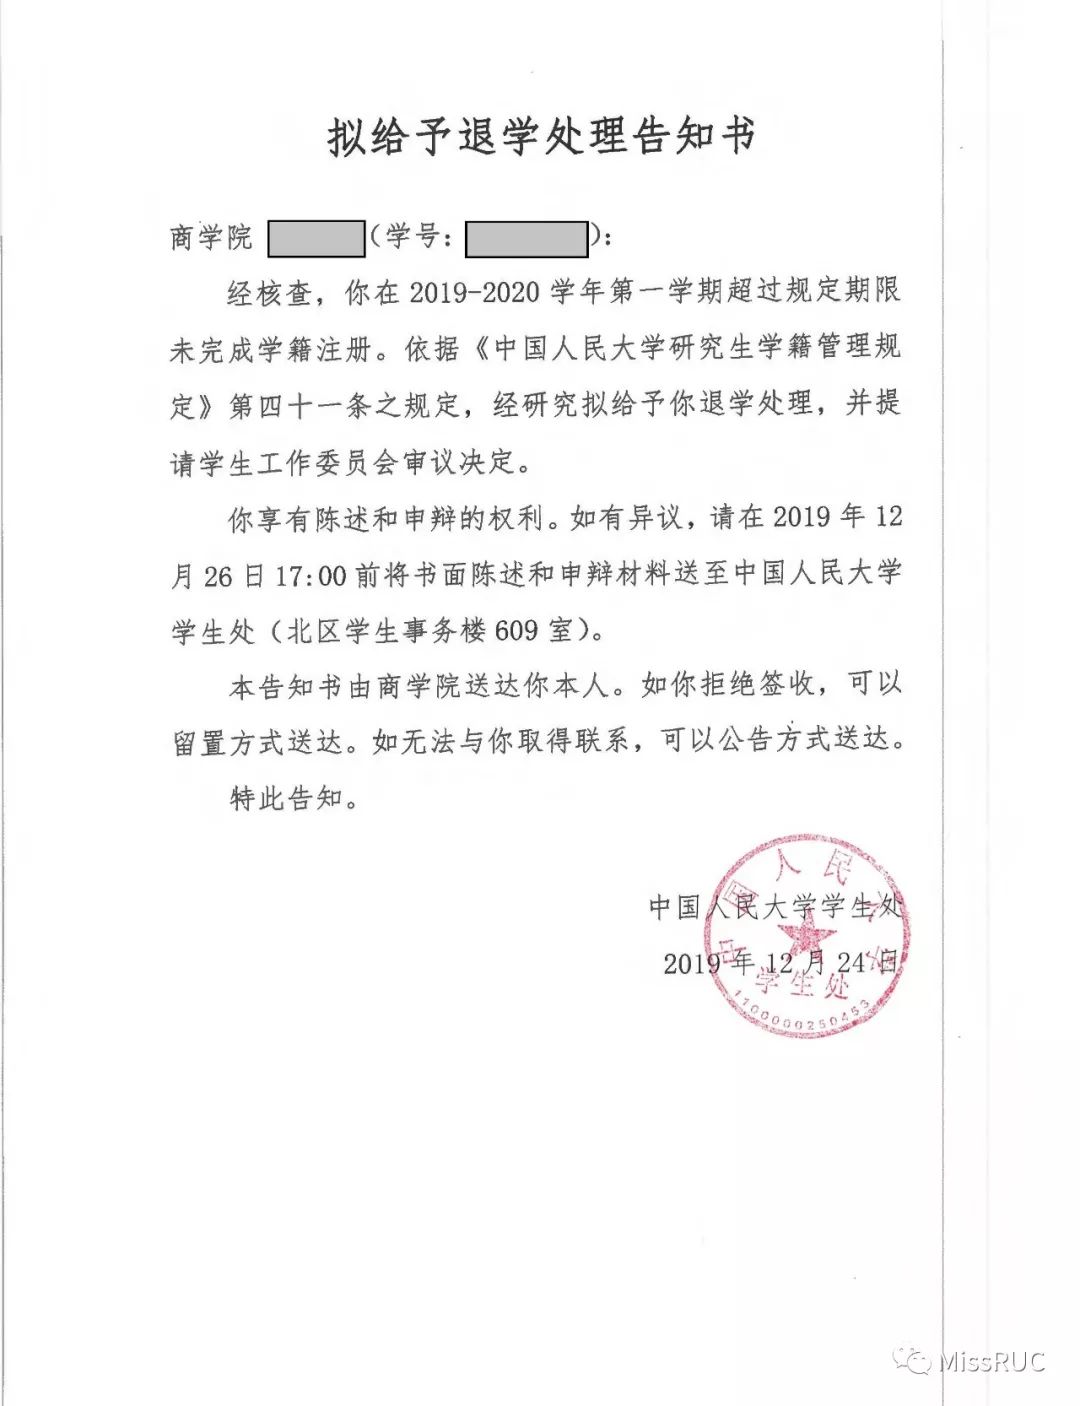 中国人民大学2019年再次给予部分学生退学处理